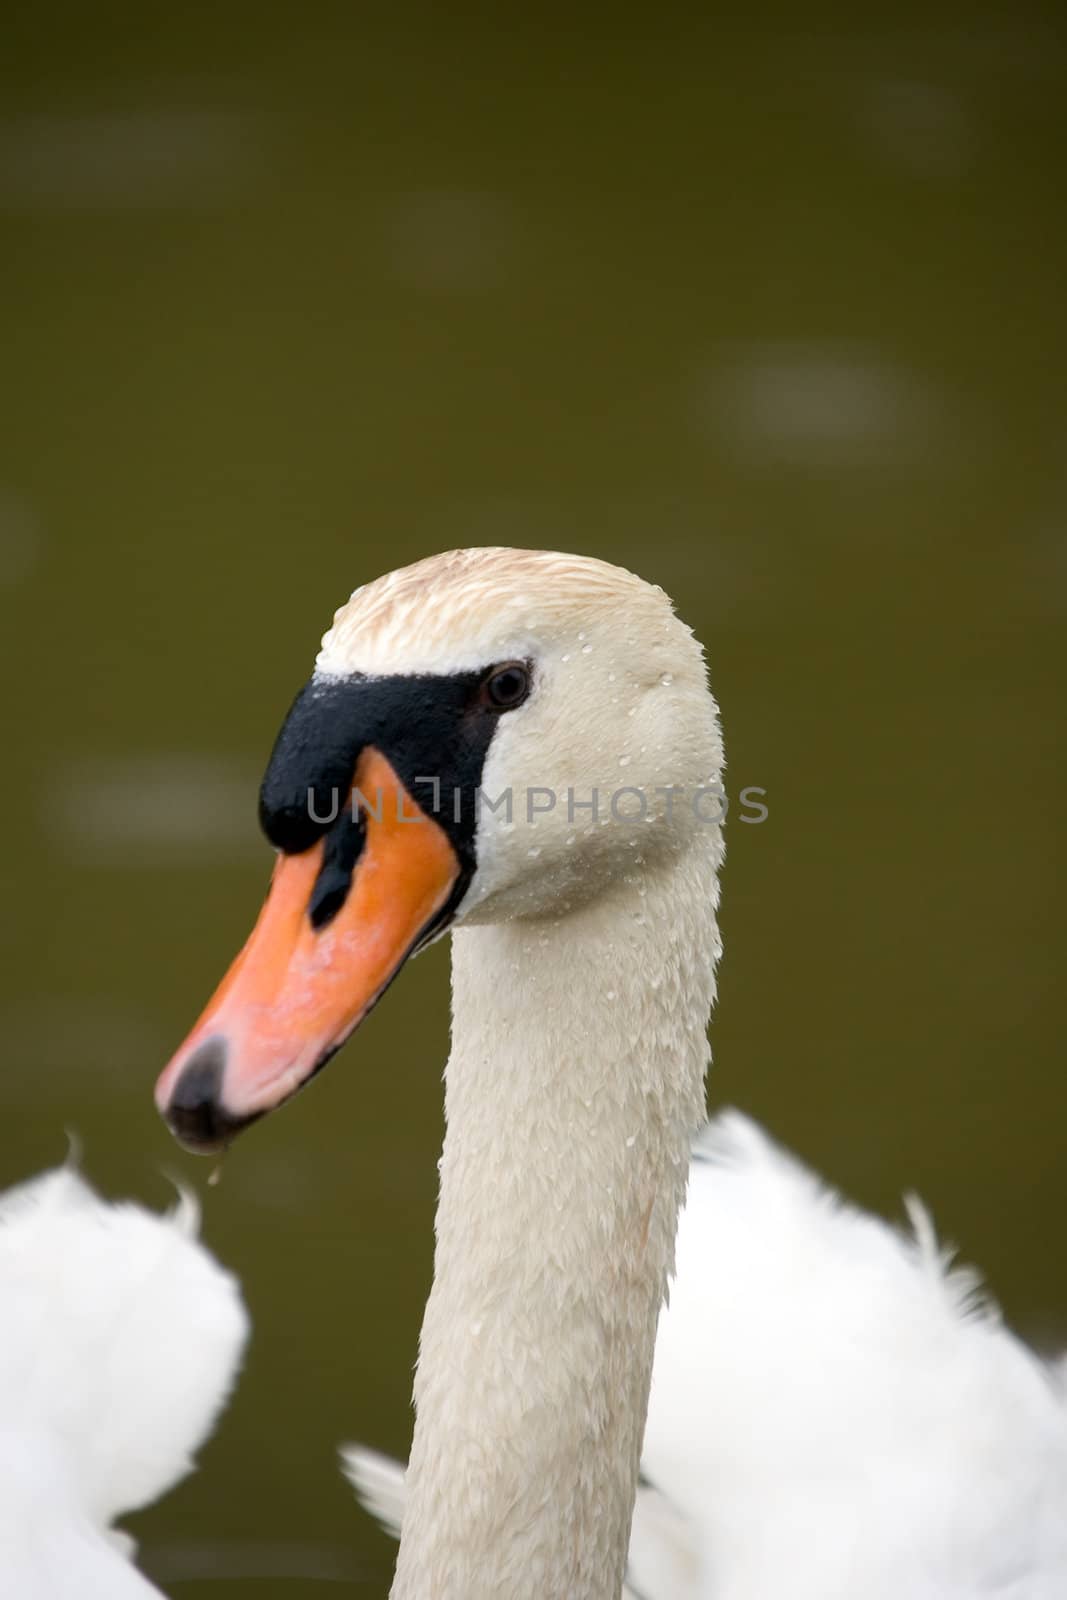 A closeup of a white swan head.